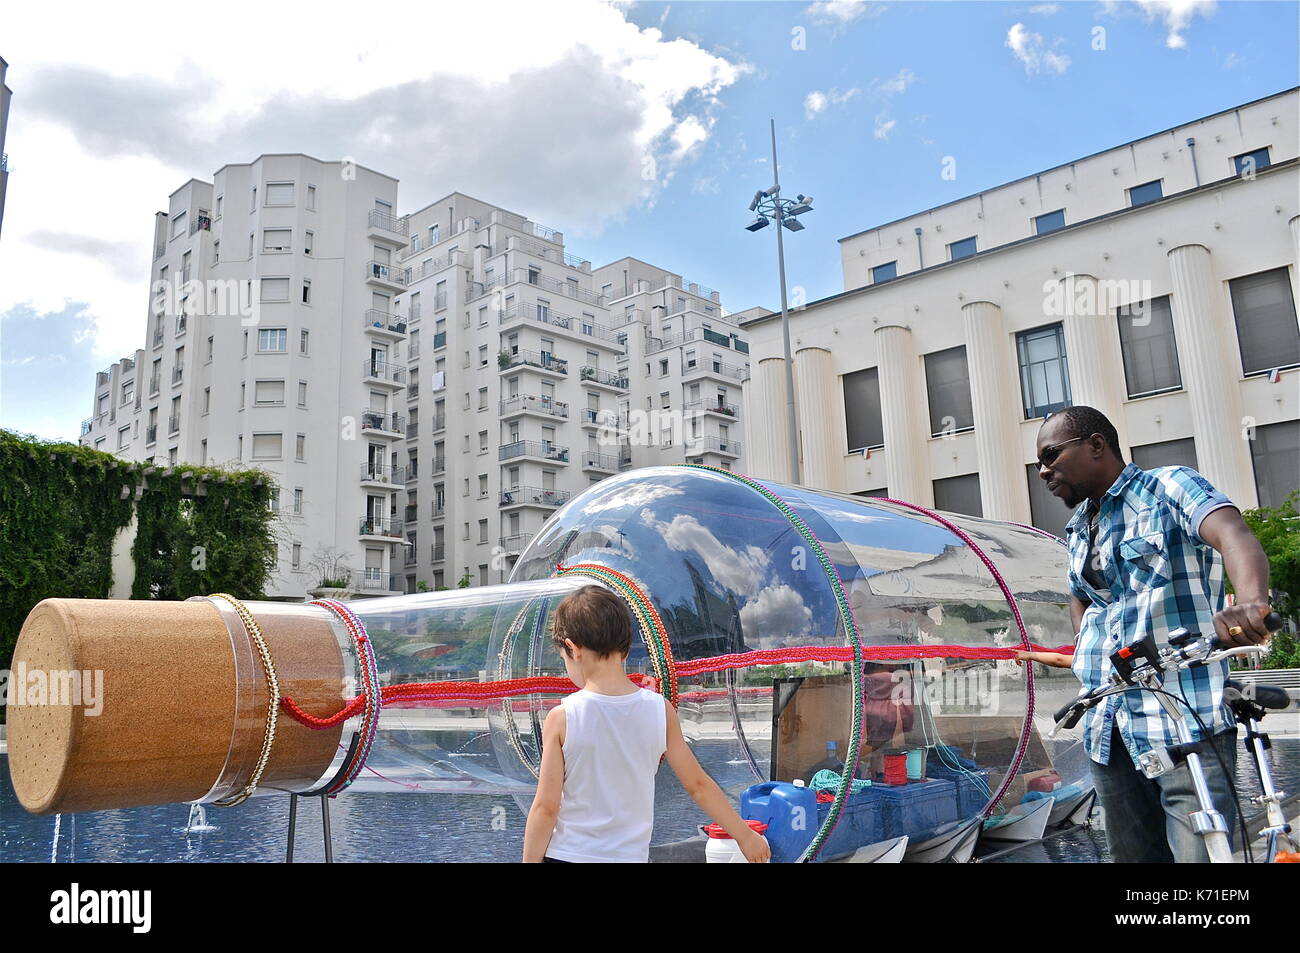 El artista francés abraham poincheval vive en una botella gigante, Villeurbanne, Francia Foto de stock